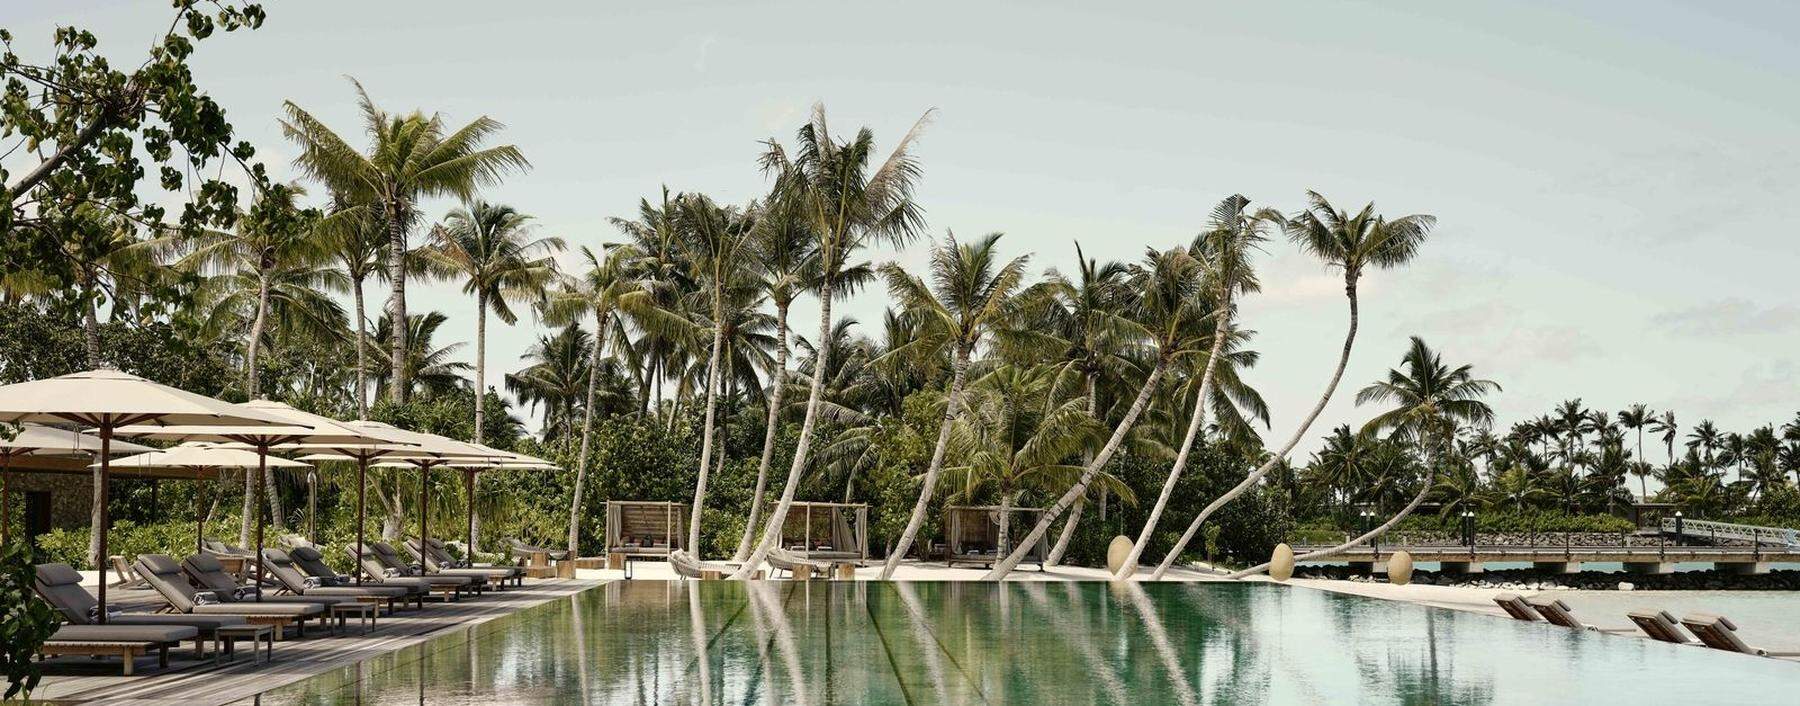 Flow-Philosophie auf den Malediven – mit puristischem Design und lokalen Vibes.